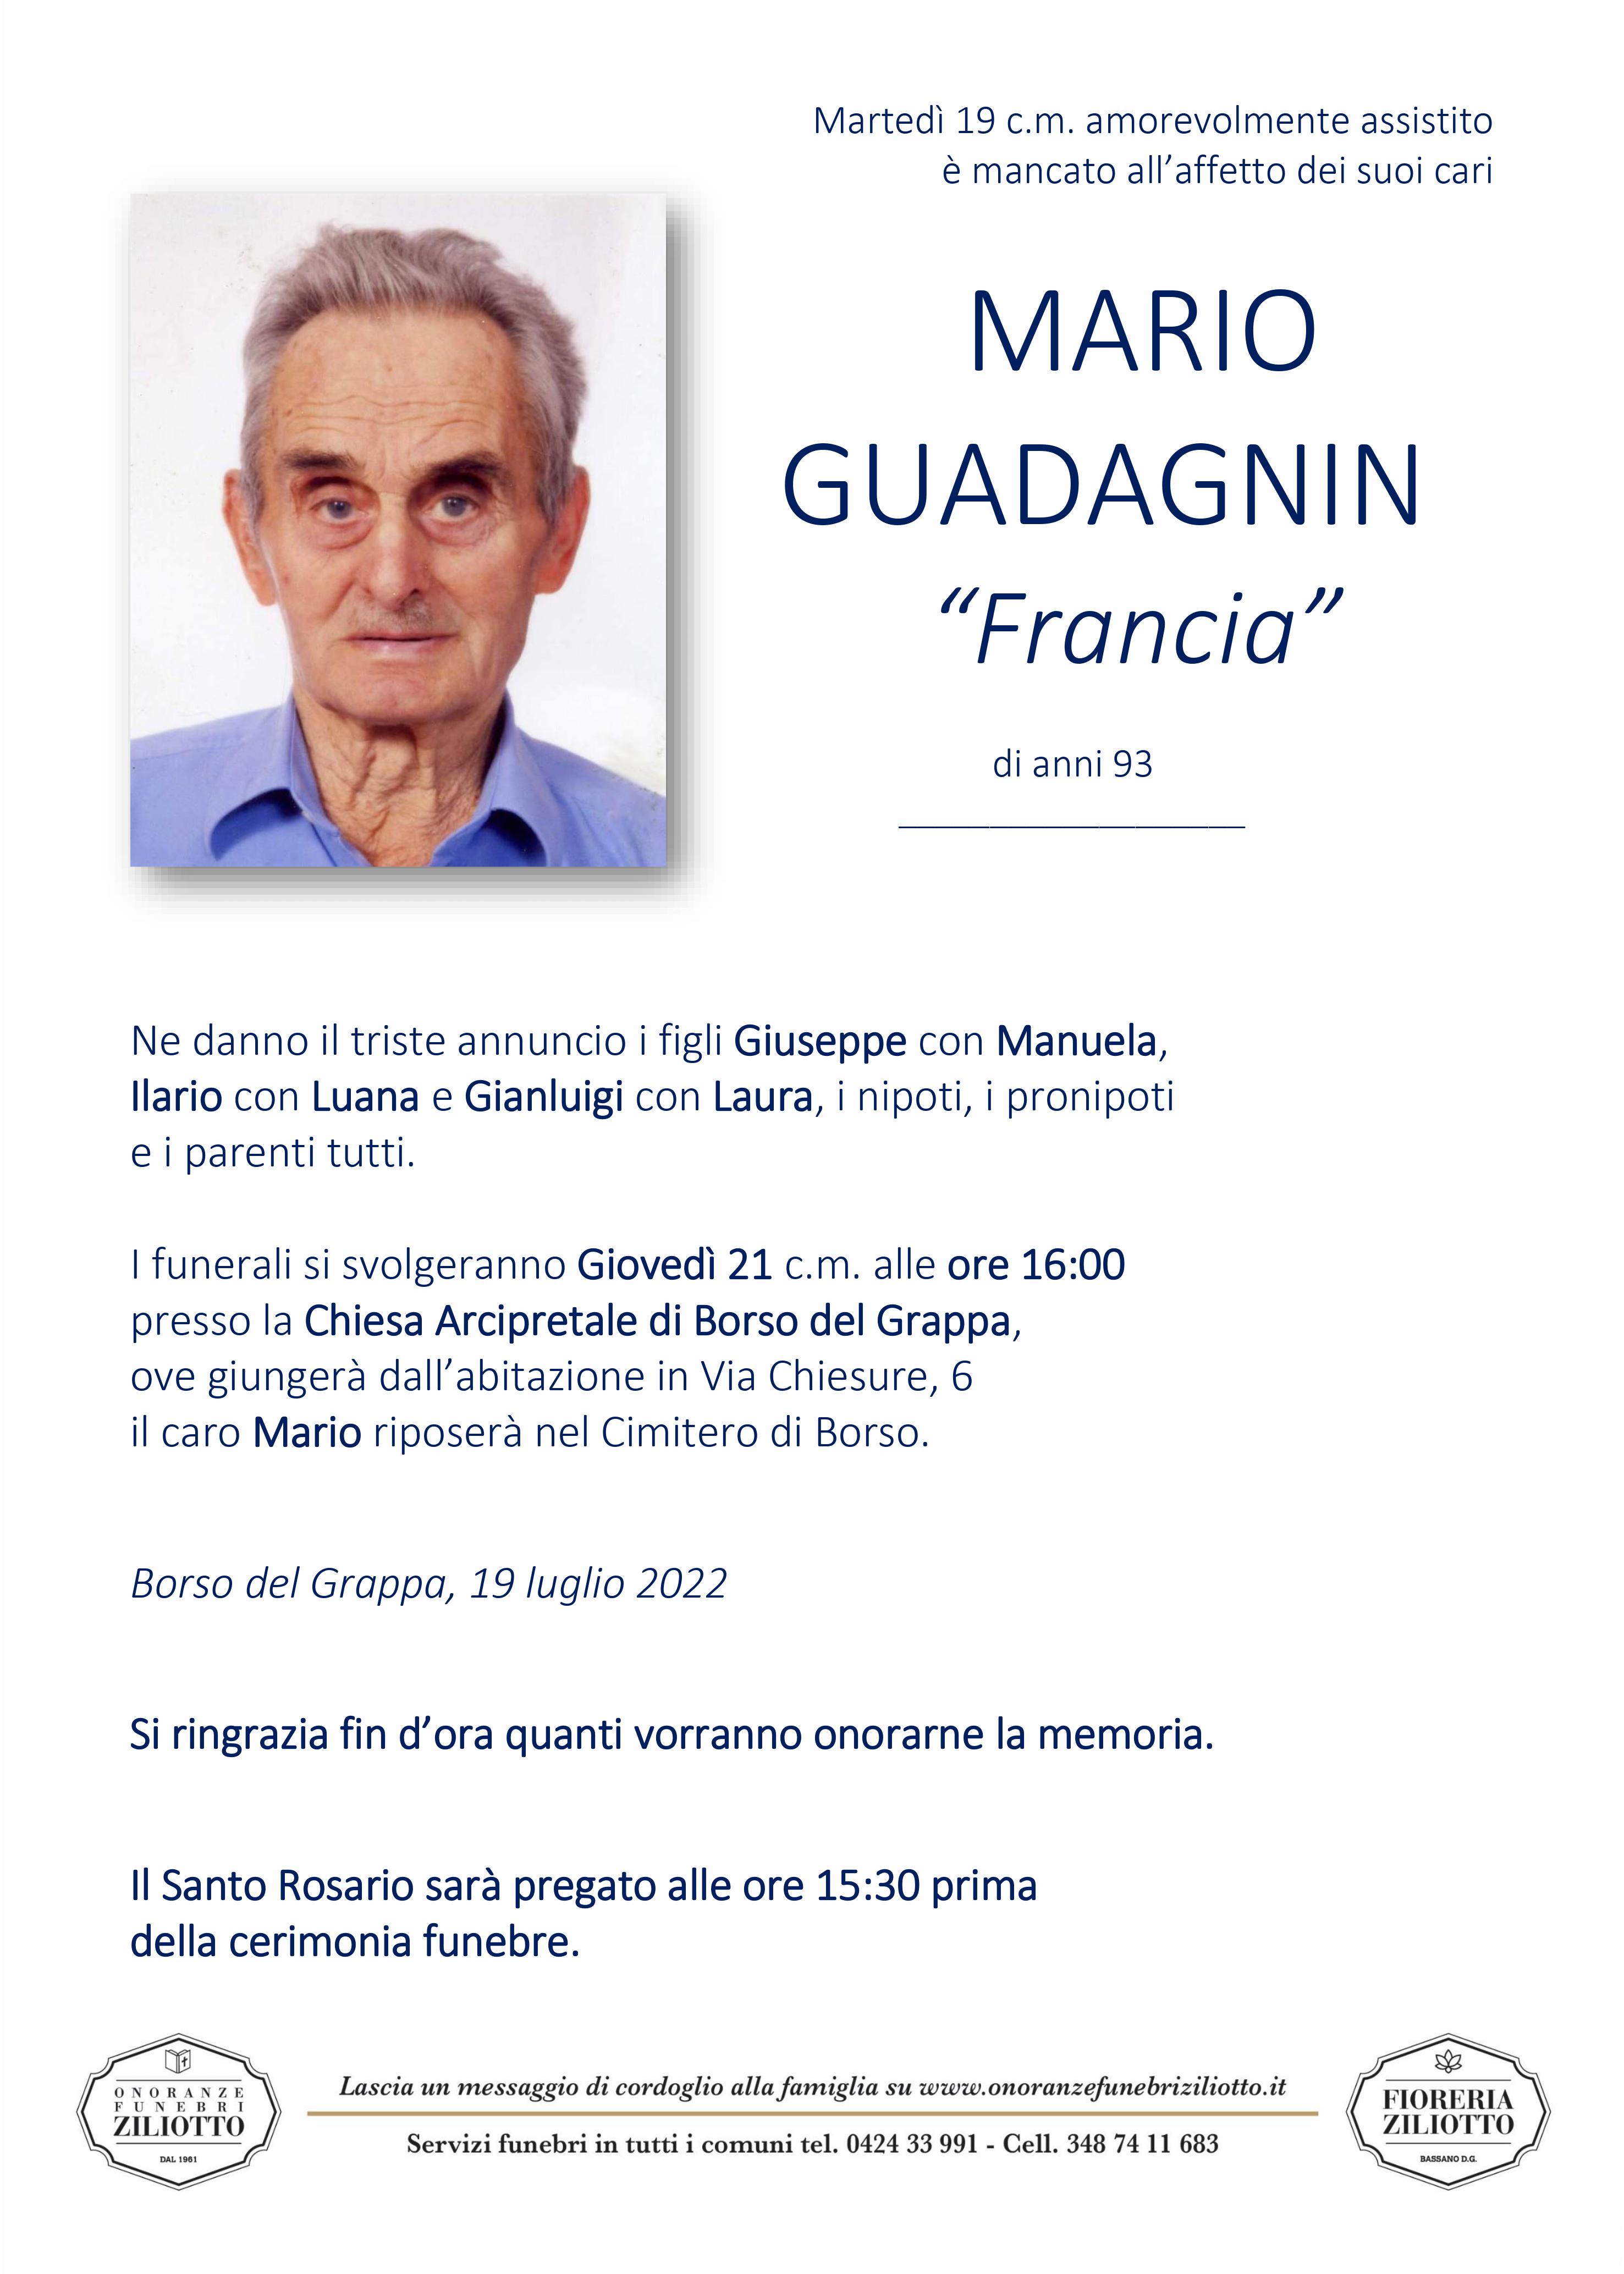 Mario Guadagnin - 93 anni - Borso del Grappa